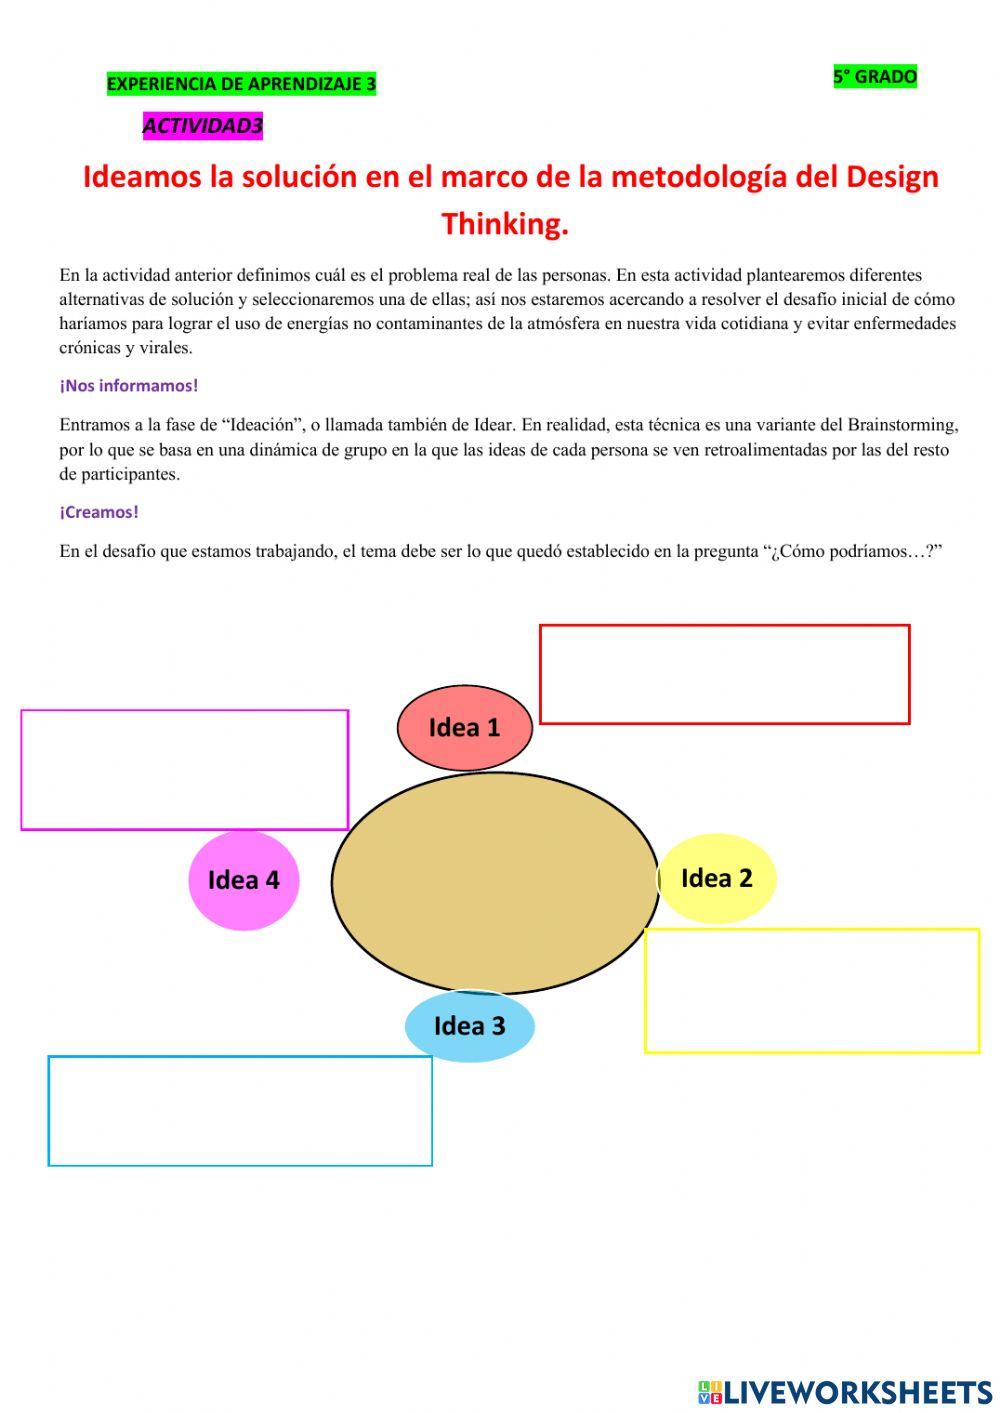 Ideamos la solución en el marco de la metodología del Design Thinking.